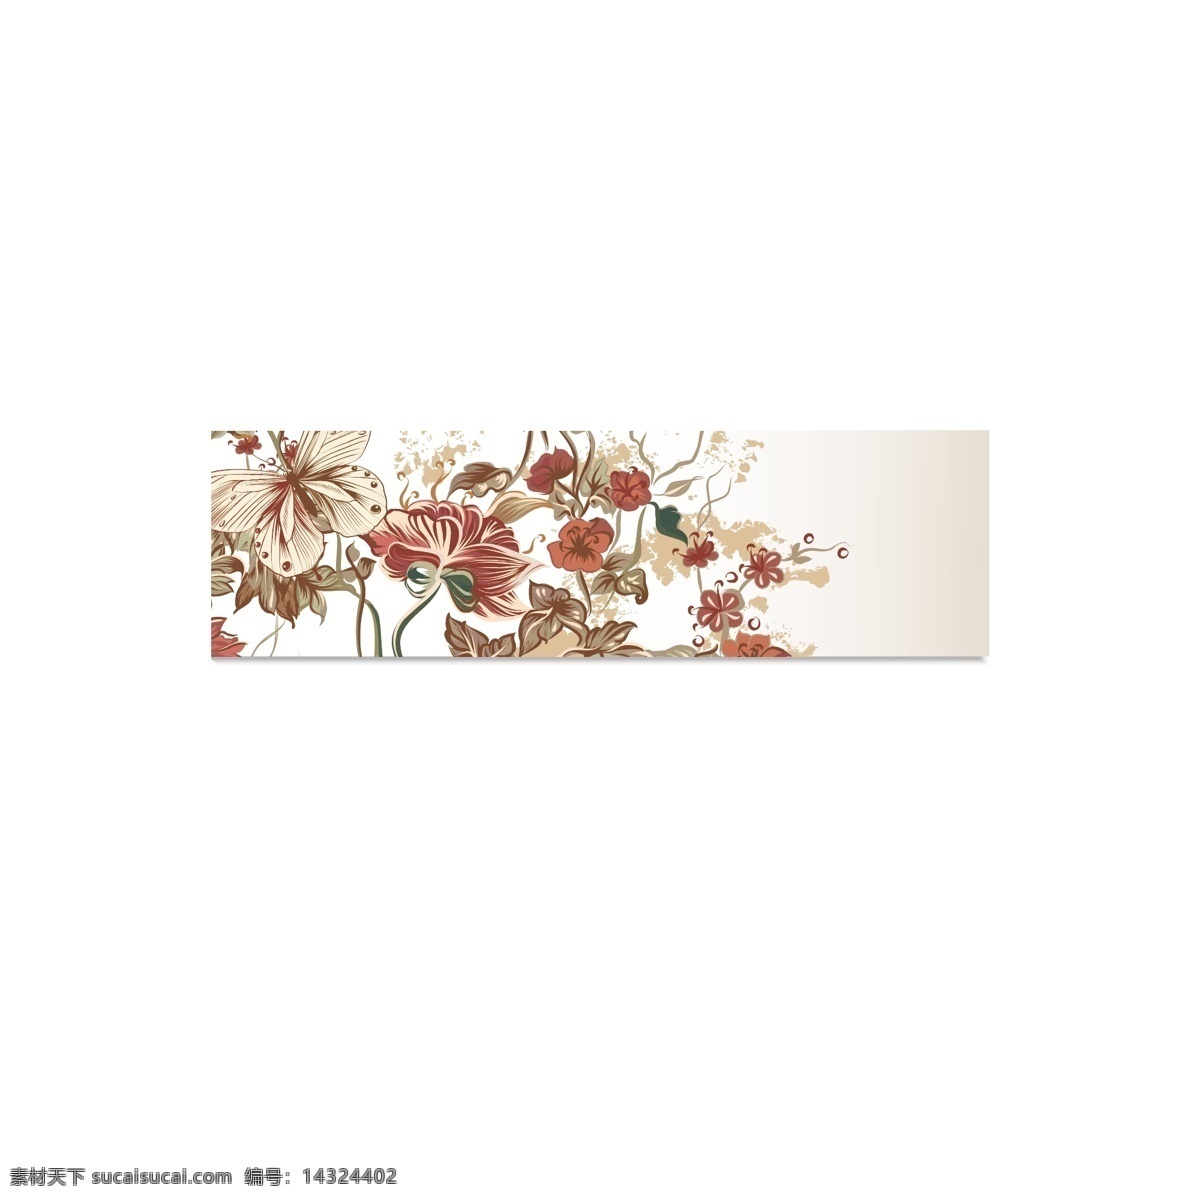 古典 花朵 花卉 植物 banner 矢量 古典花朵 矢量素材 时尚花朵 蝴蝶 线性花朵 传统花纹 海报 中国风